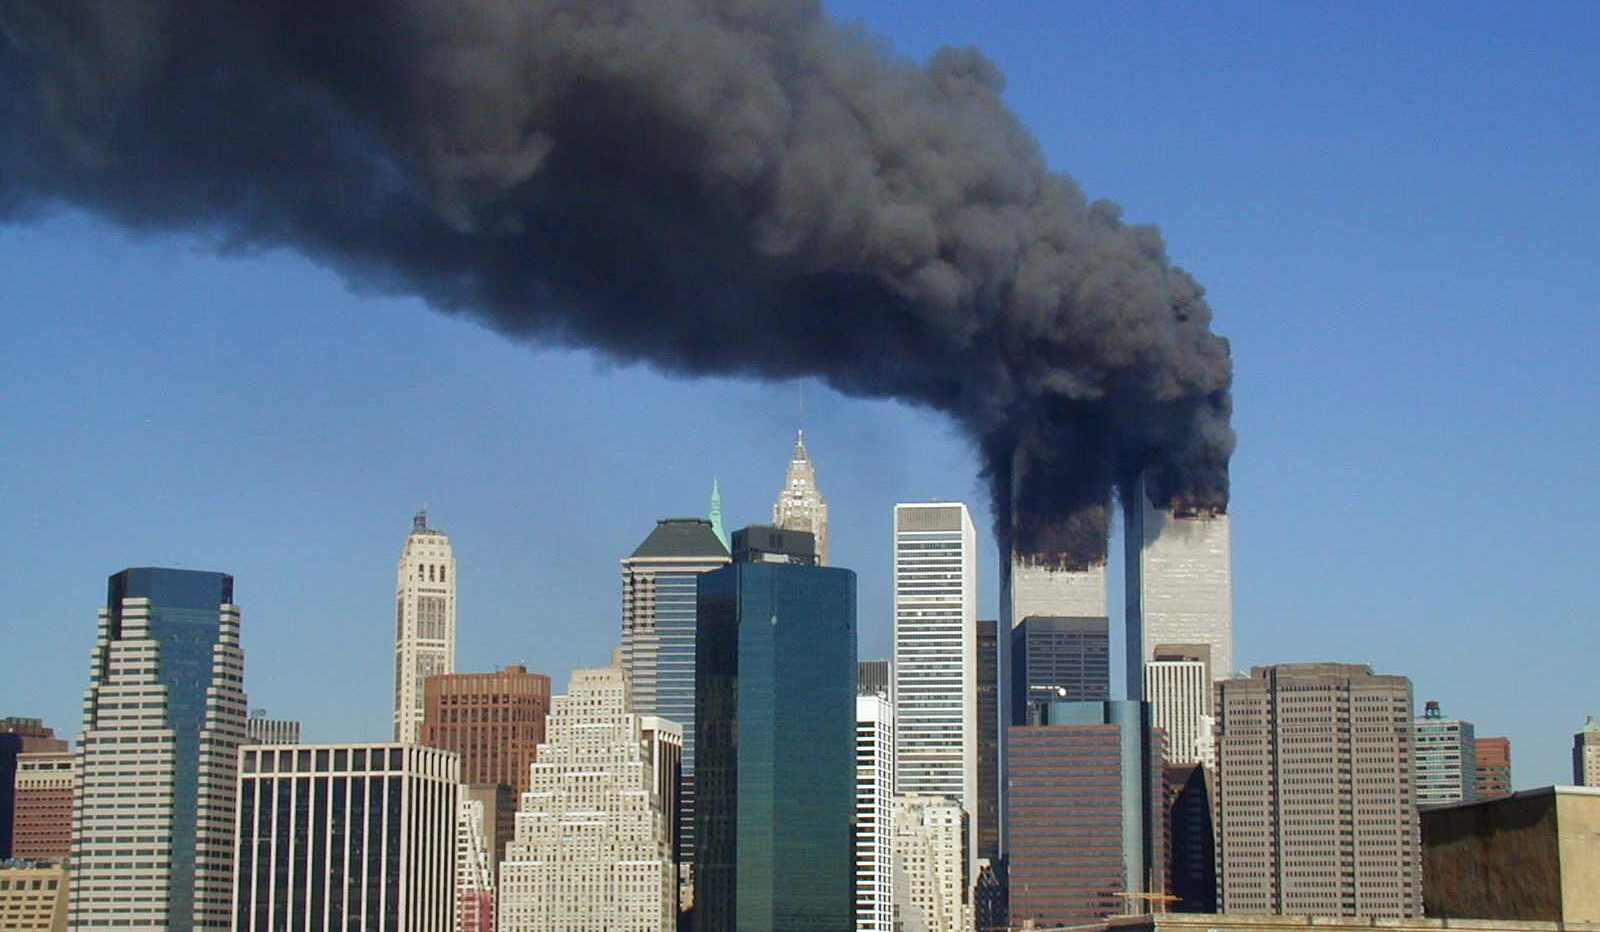 11 septembre 2001 : les attentats du World Trade Center en 7 photos